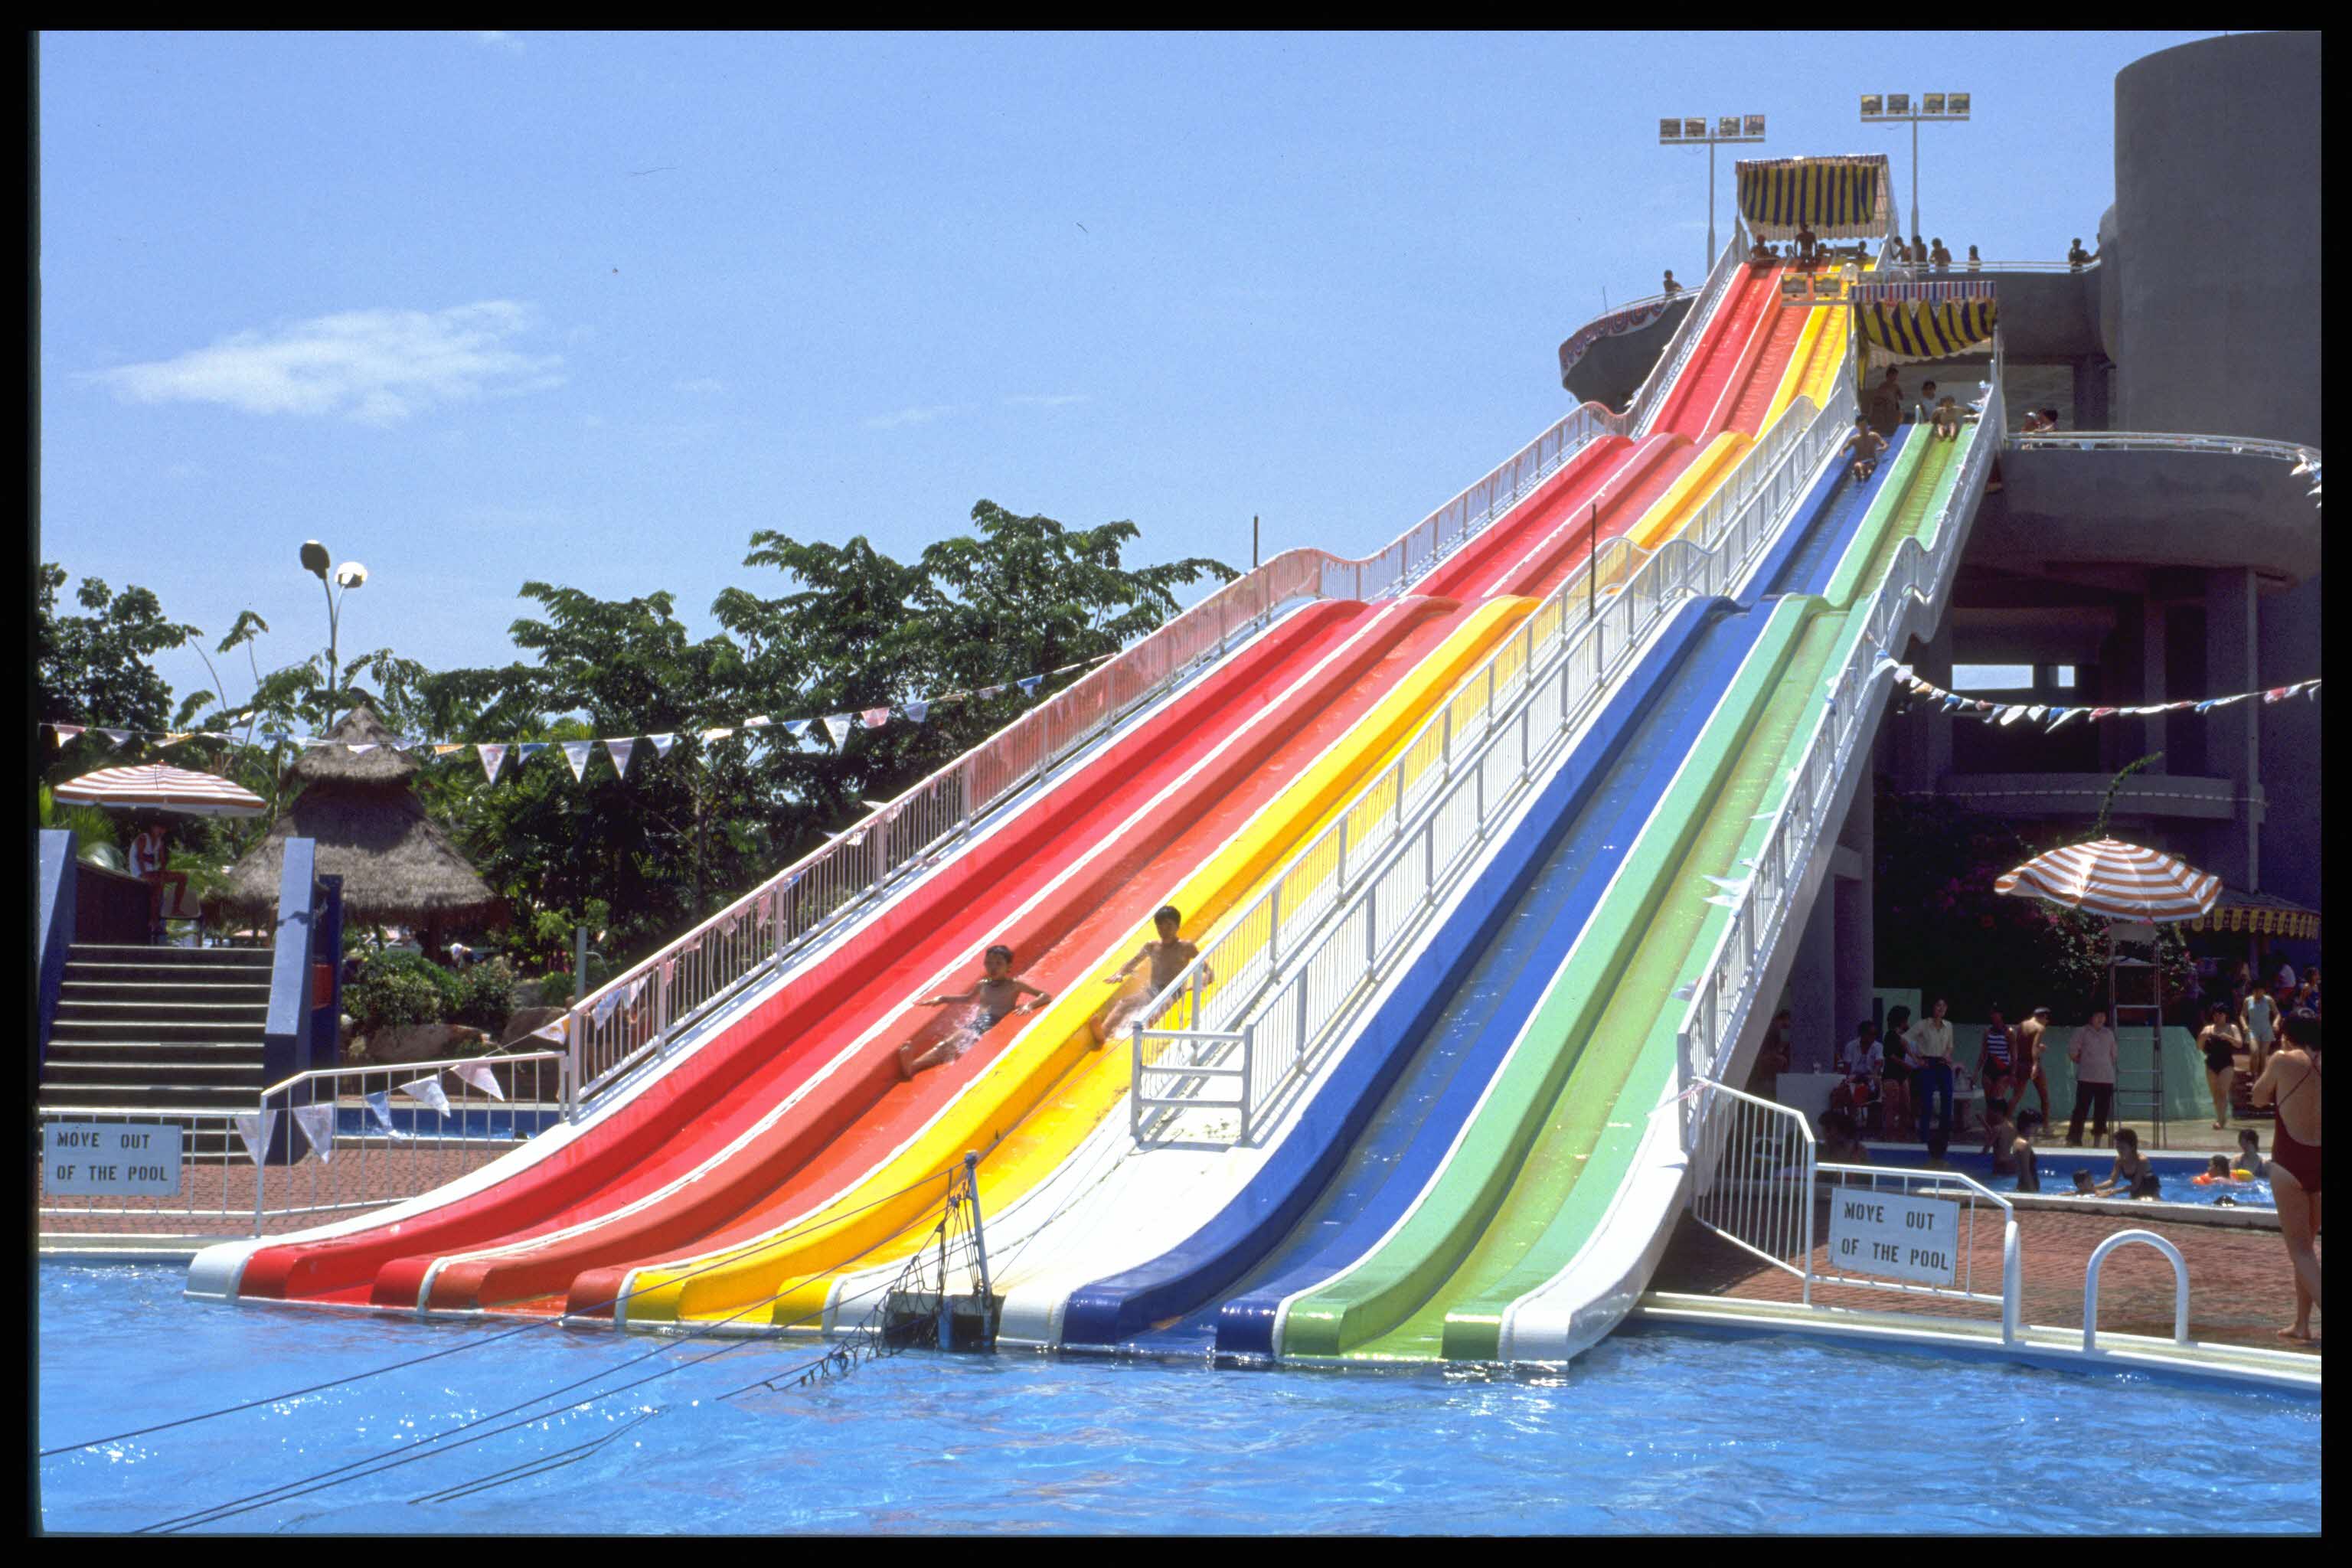 Big Splash water park in 1984